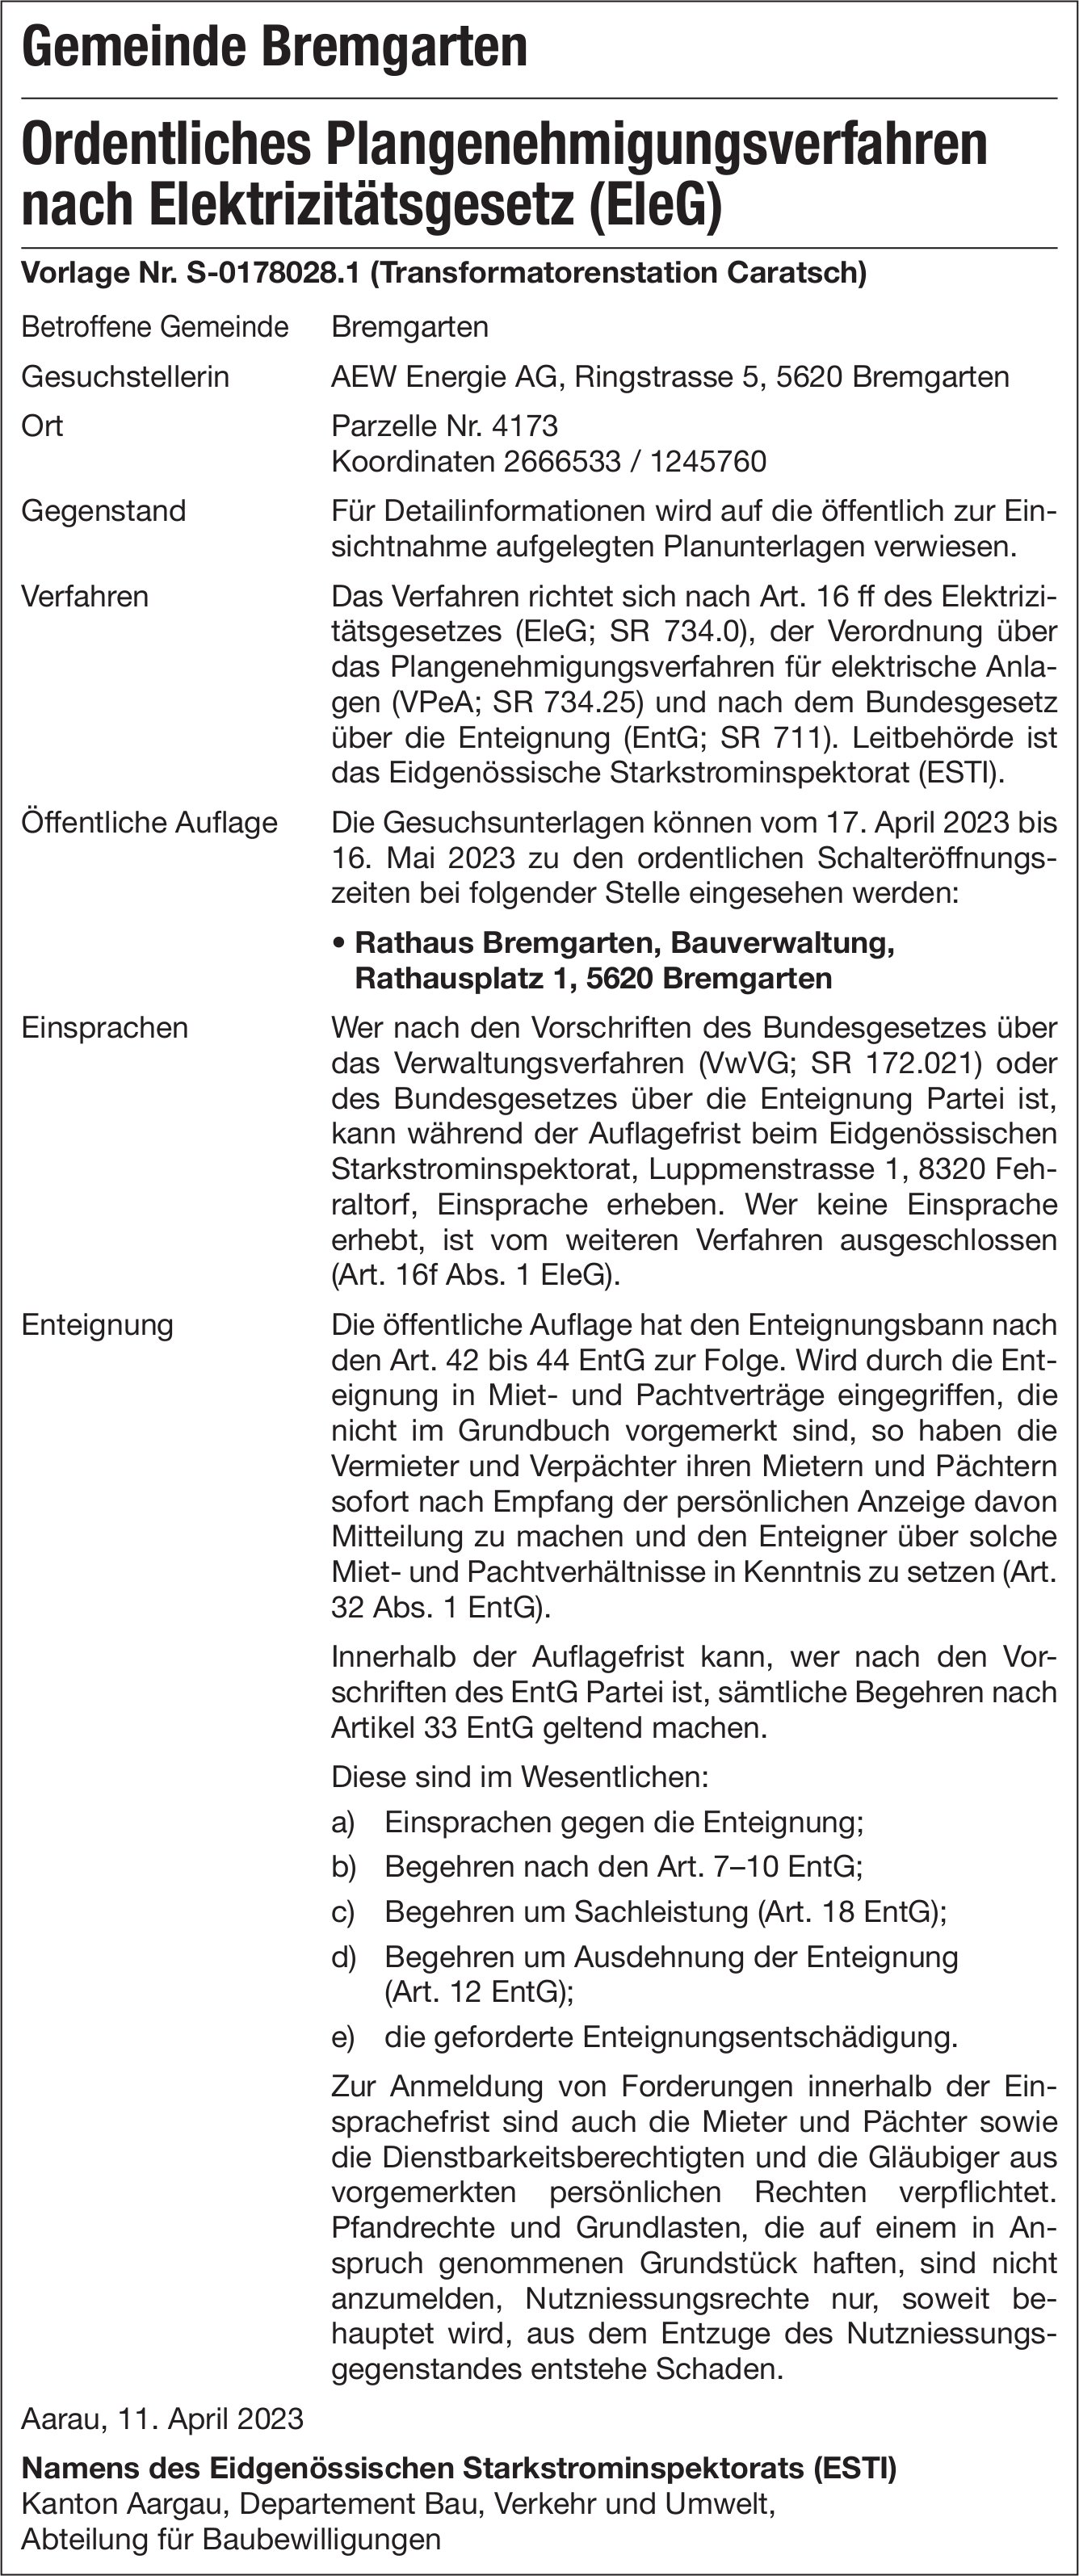 Bremgarten - Ordentliches Plangenehmigungsverfahren nach Elektrizitätsgesetz (EleG)